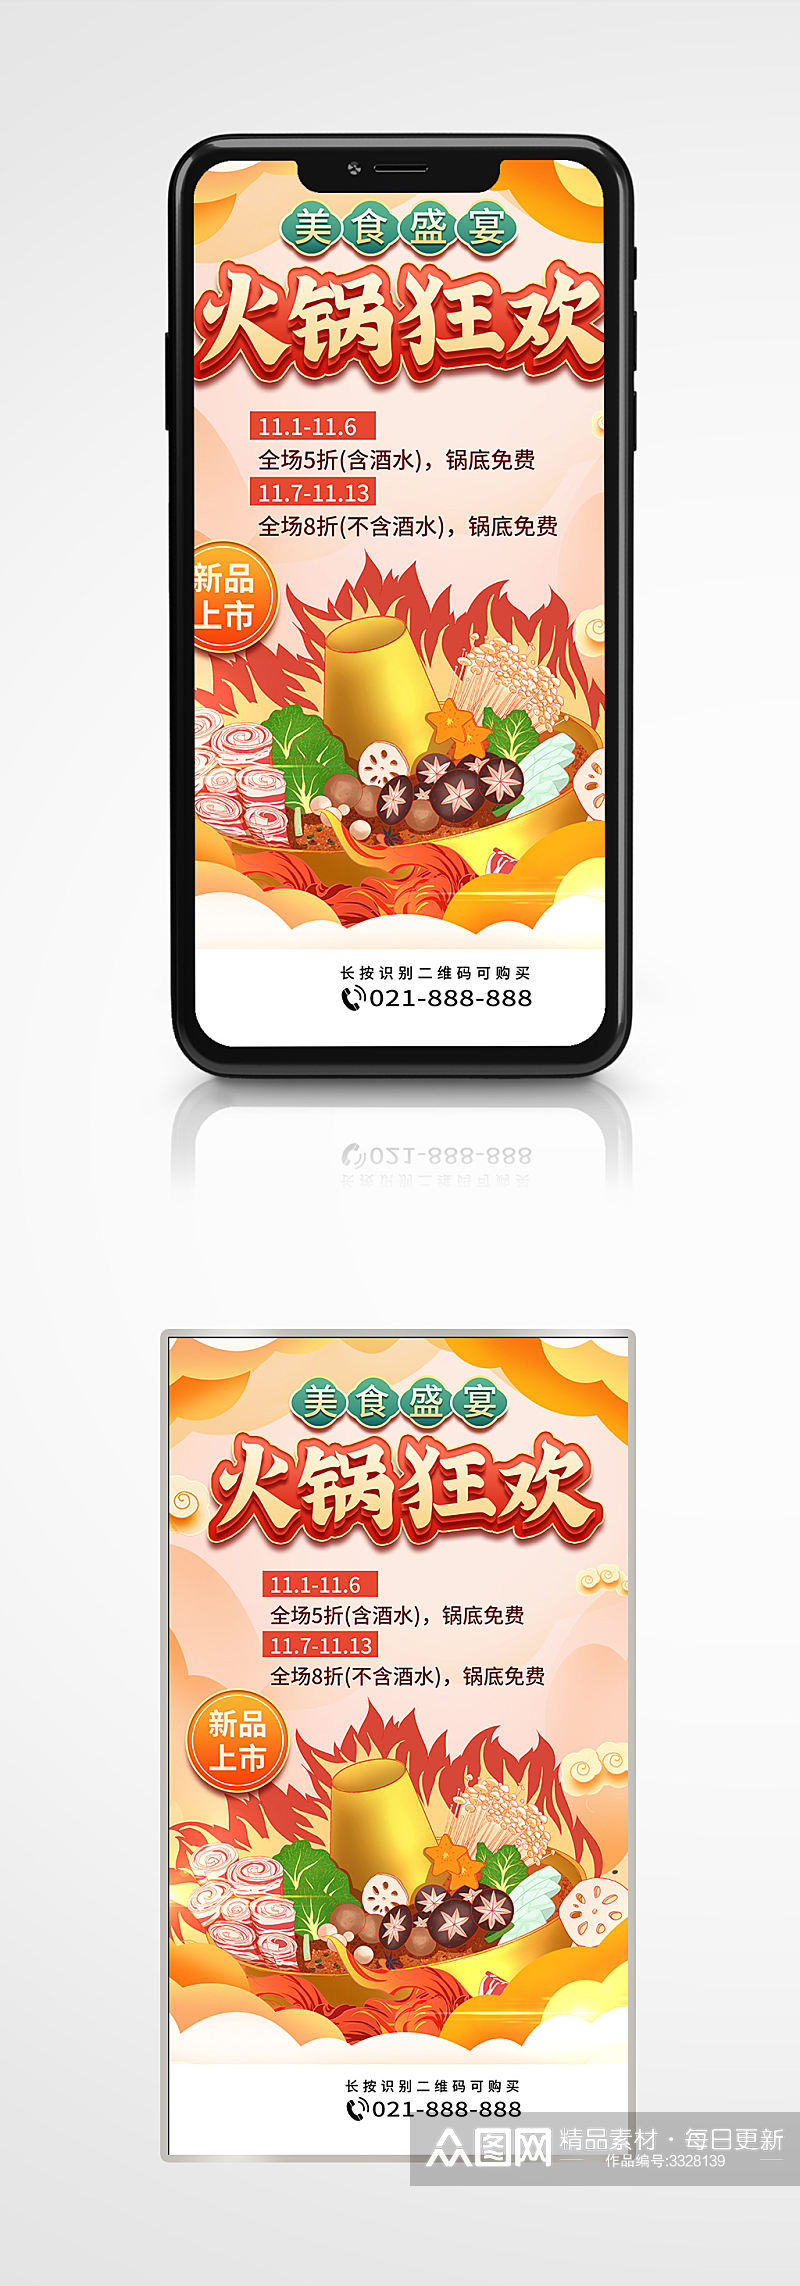 美食火锅活动手机海报手绘创意餐厅素材